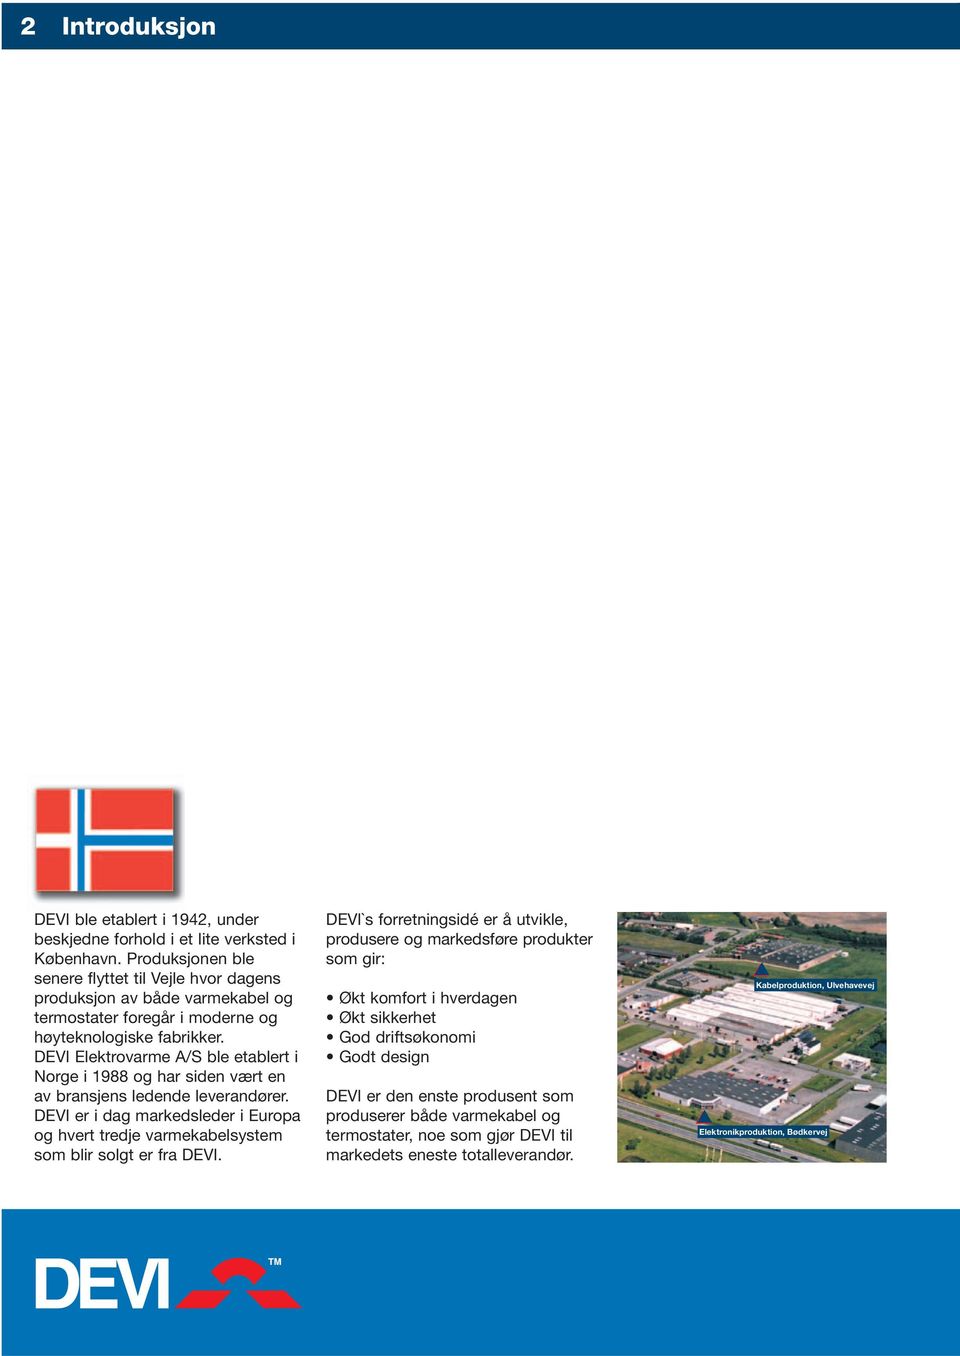 DEVI Elektrovarme A/S ble etablert i Norge i 1988 og har siden vært en av bransjens ledende leverandører.